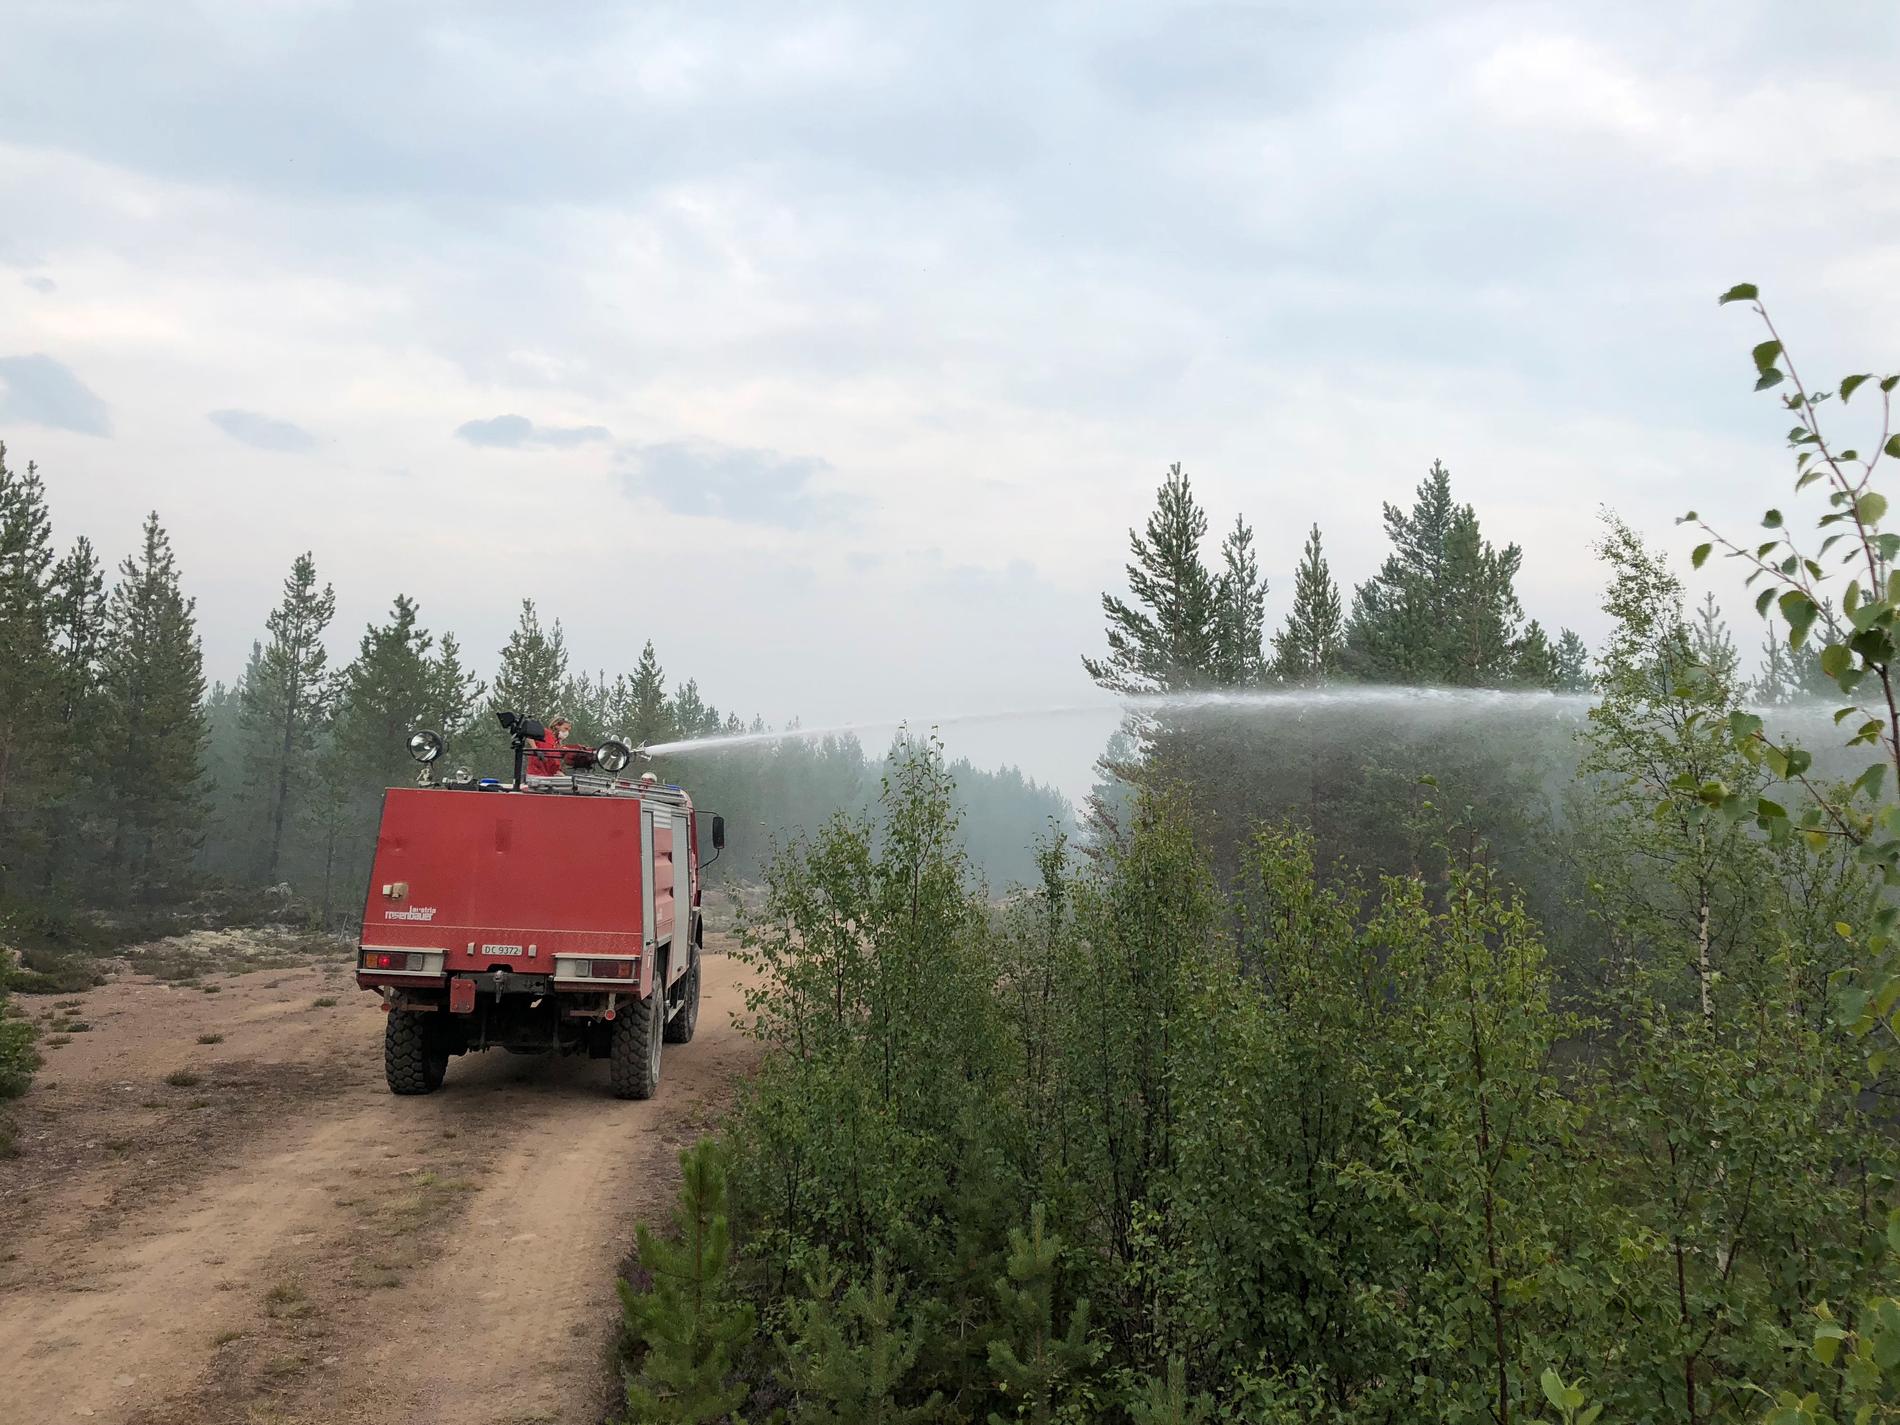 När Johan Fredholm och kollegerna bland deltidsbrandmännen i Funäsdalen fått uppdraget att bevaka en väg som fungerade som brandlinje i skogen möttes de av en annorlunda syn – en specialbyggd brandbil från Norge.